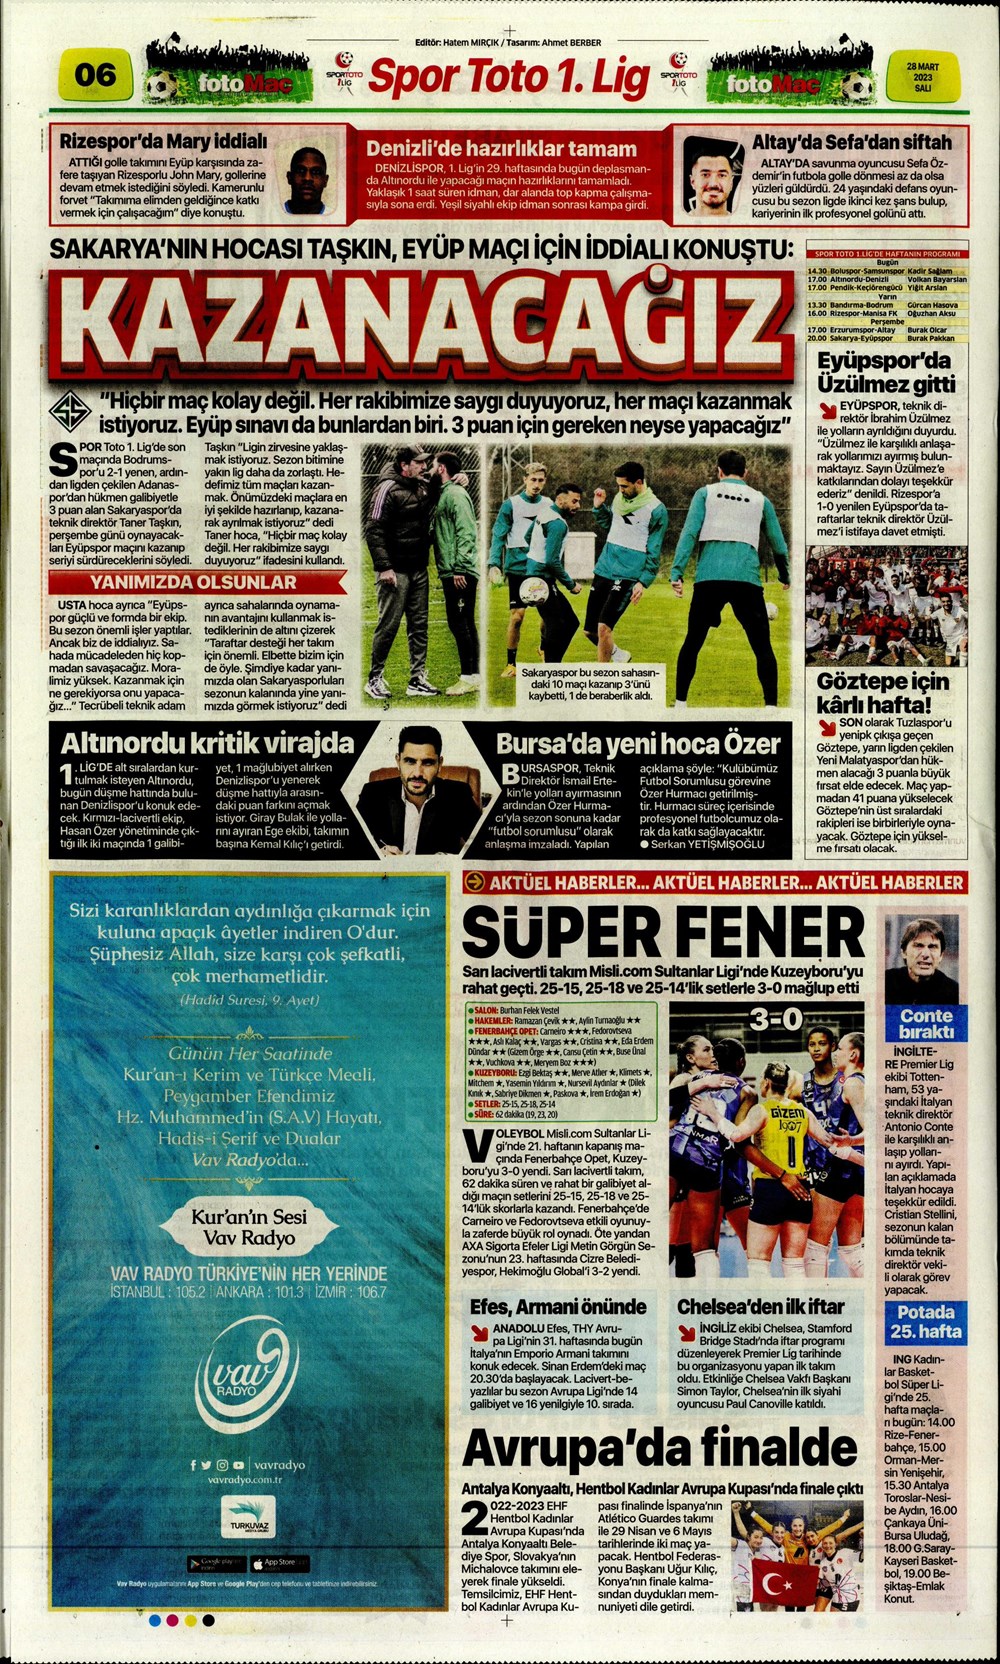 "Vurduğumuz gol olsun" - Sporun manşetleri - 16. Foto